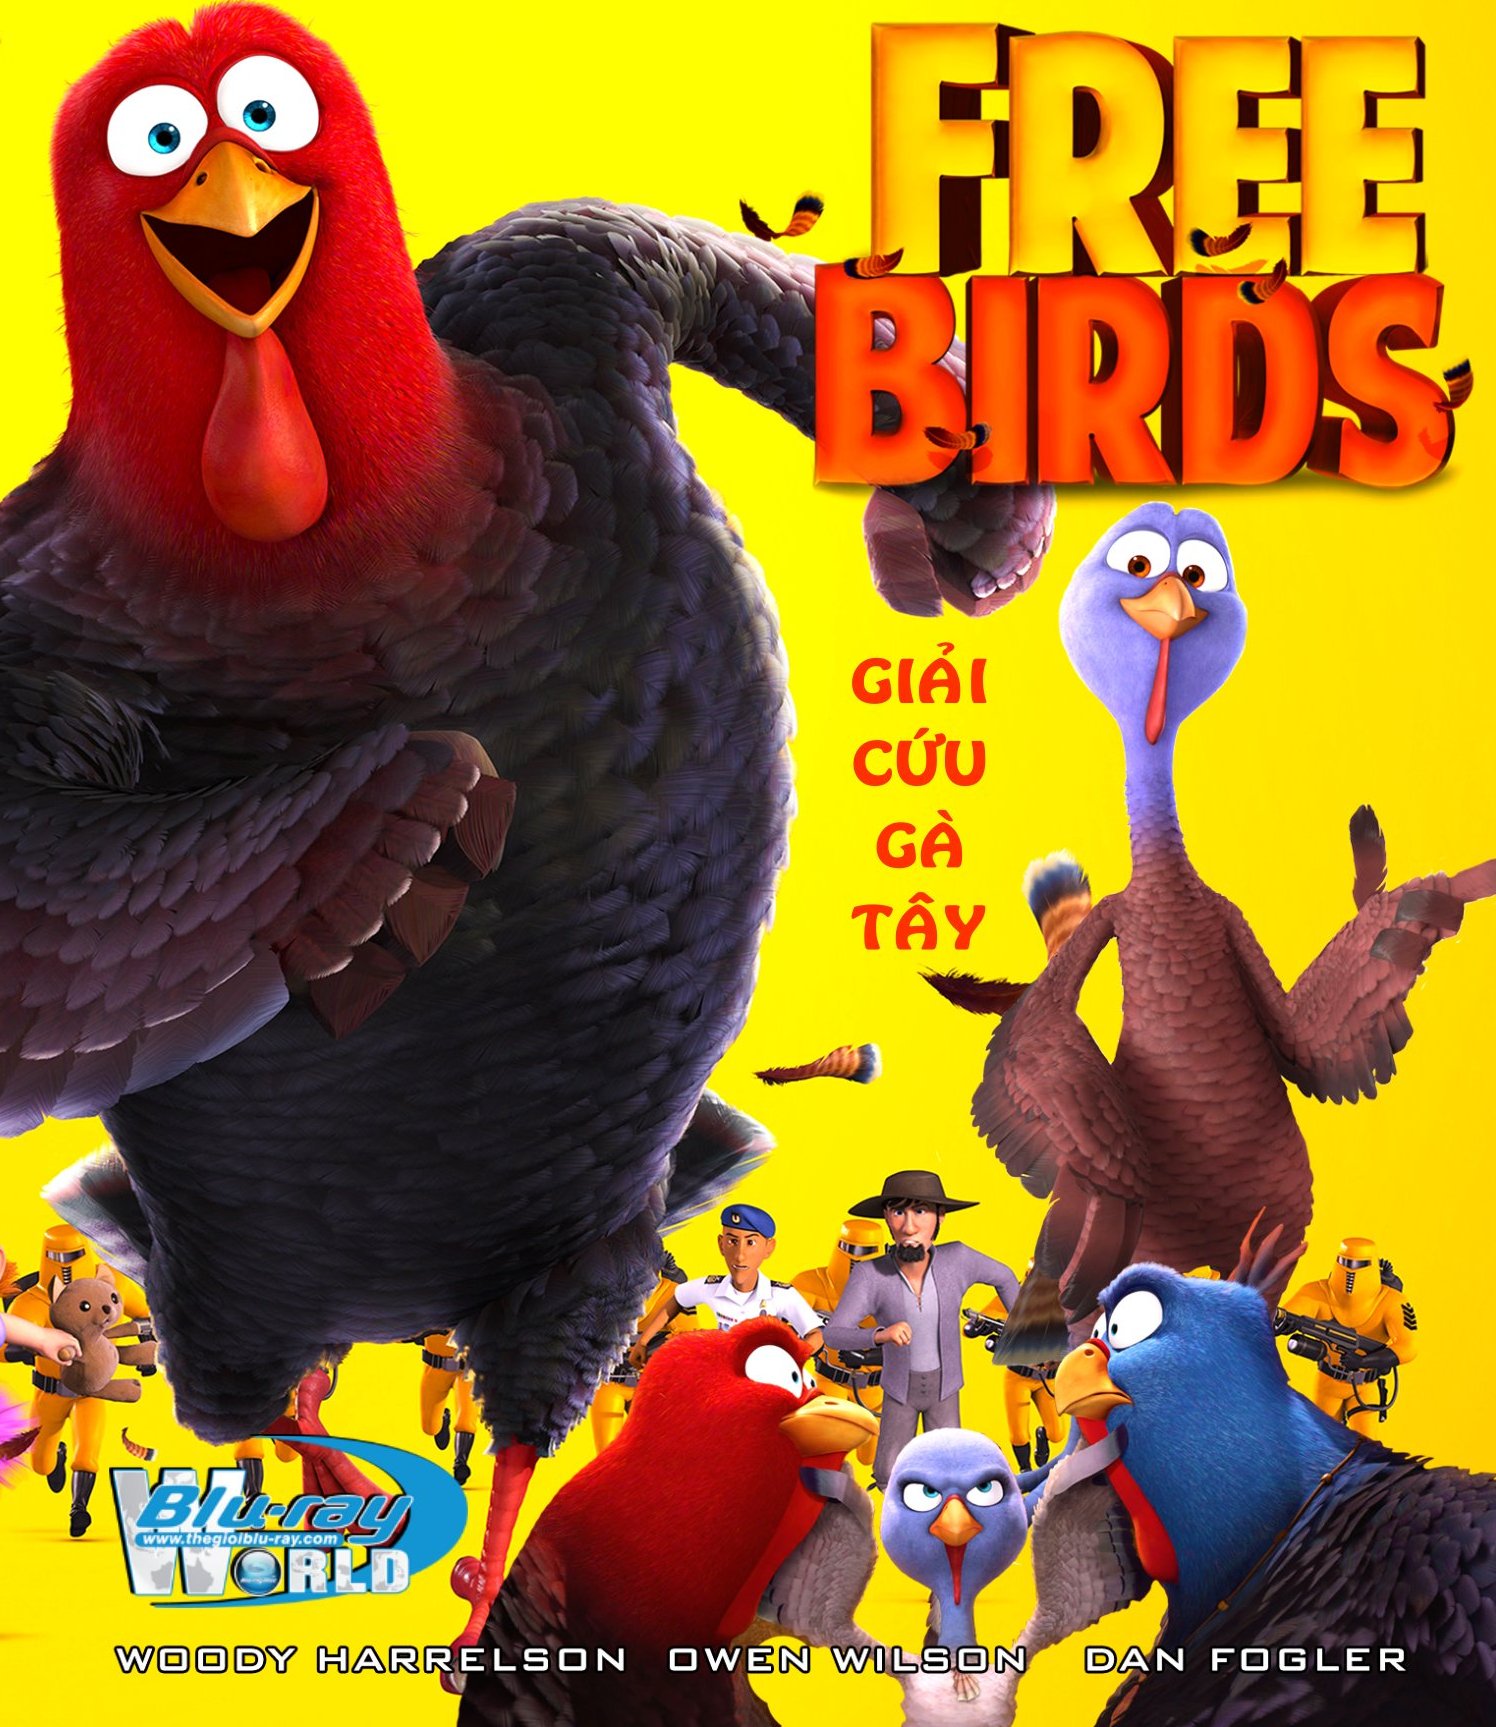 B1612. Free Birds - GIẢI CỨU GÀ TÂY 2D 25G (DTS-HD MA 5.1) 